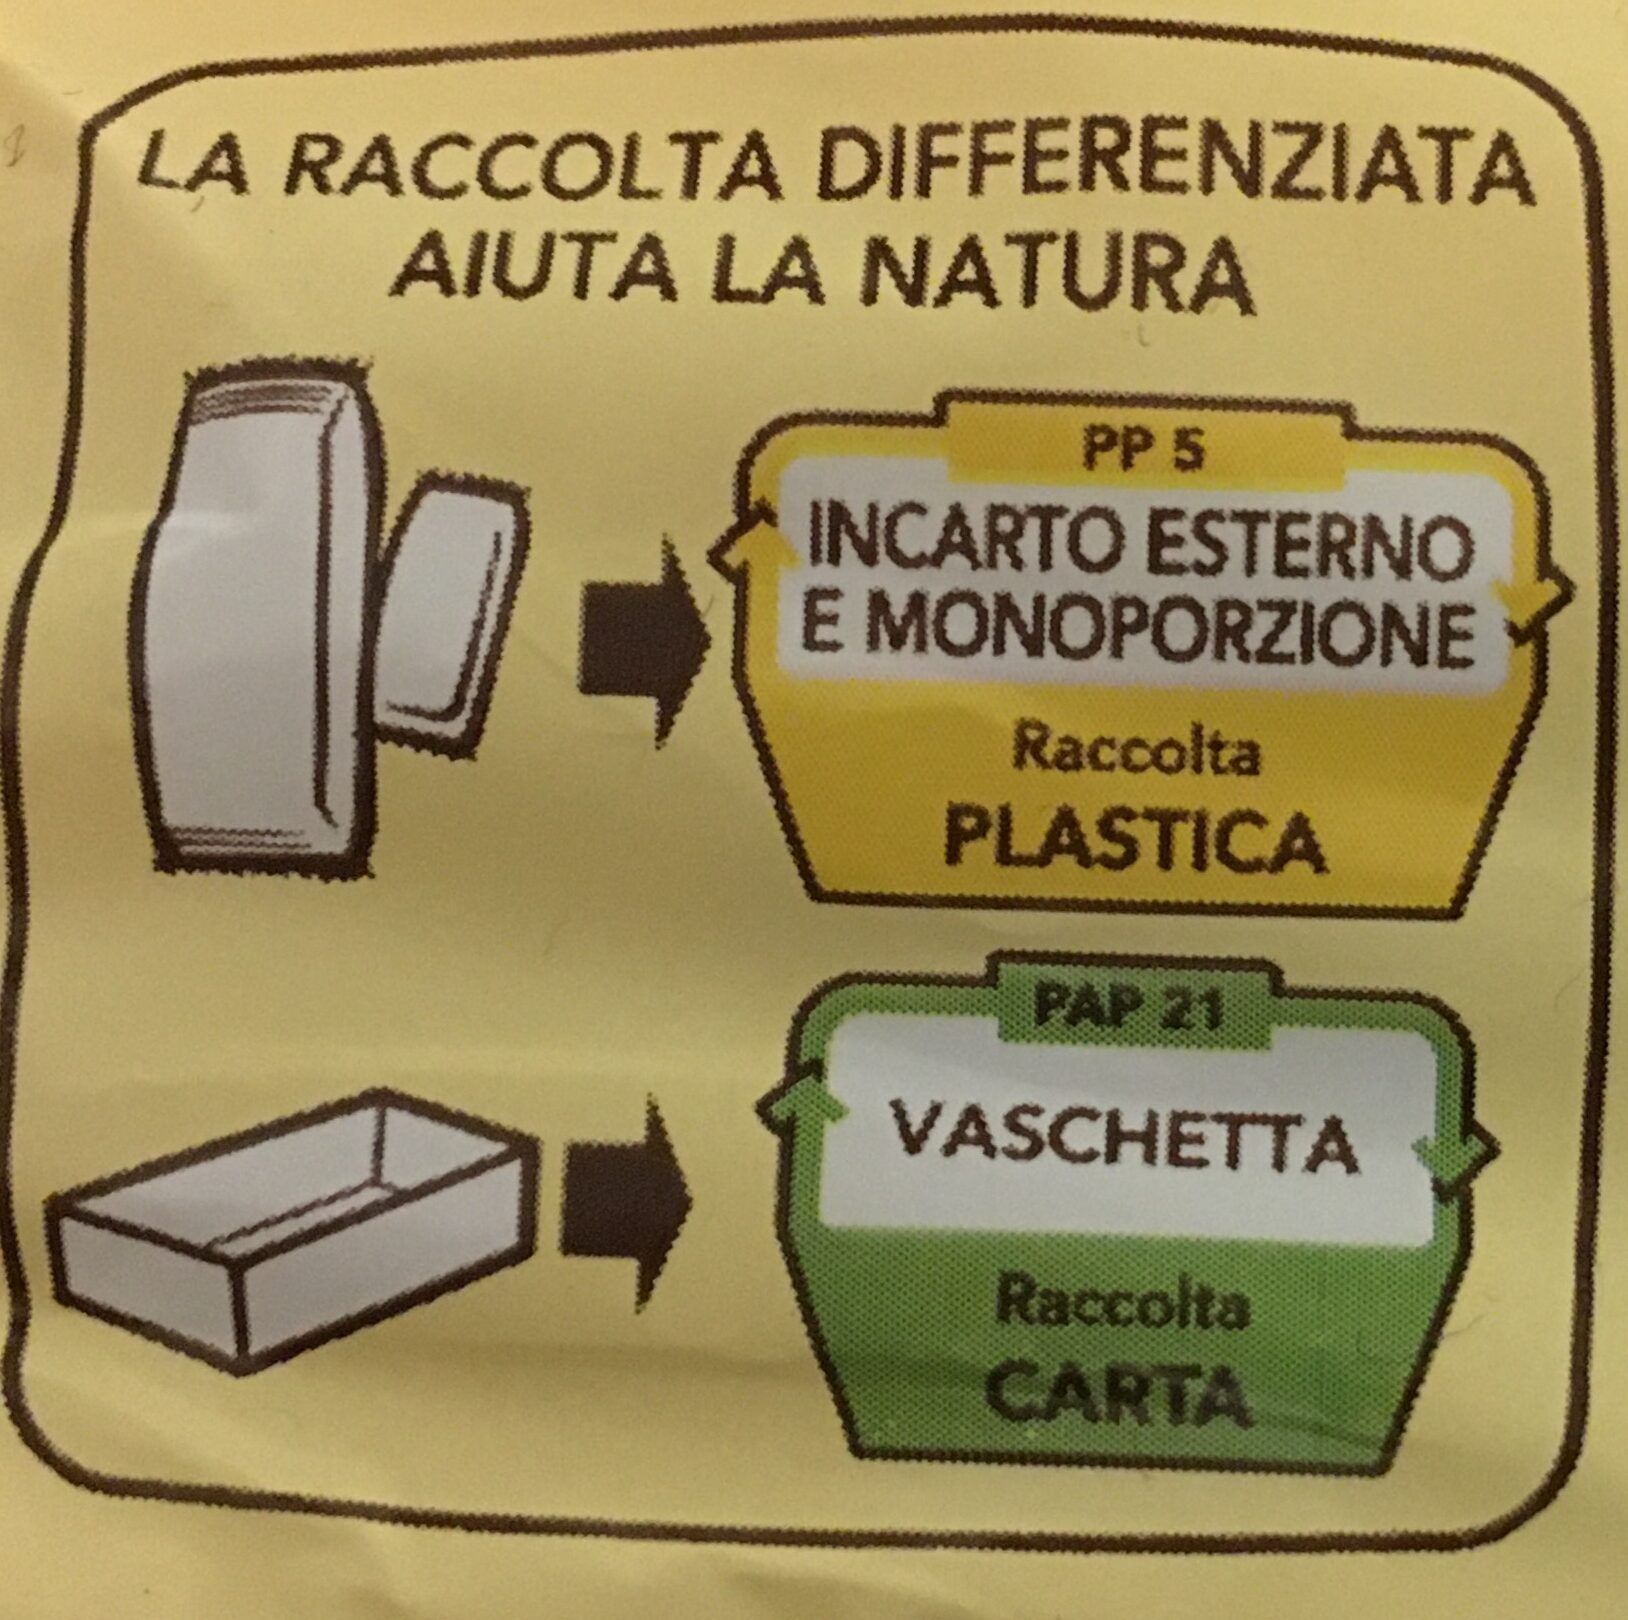 Flauti stracciatella - Instruction de recyclage et/ou informations d'emballage - it